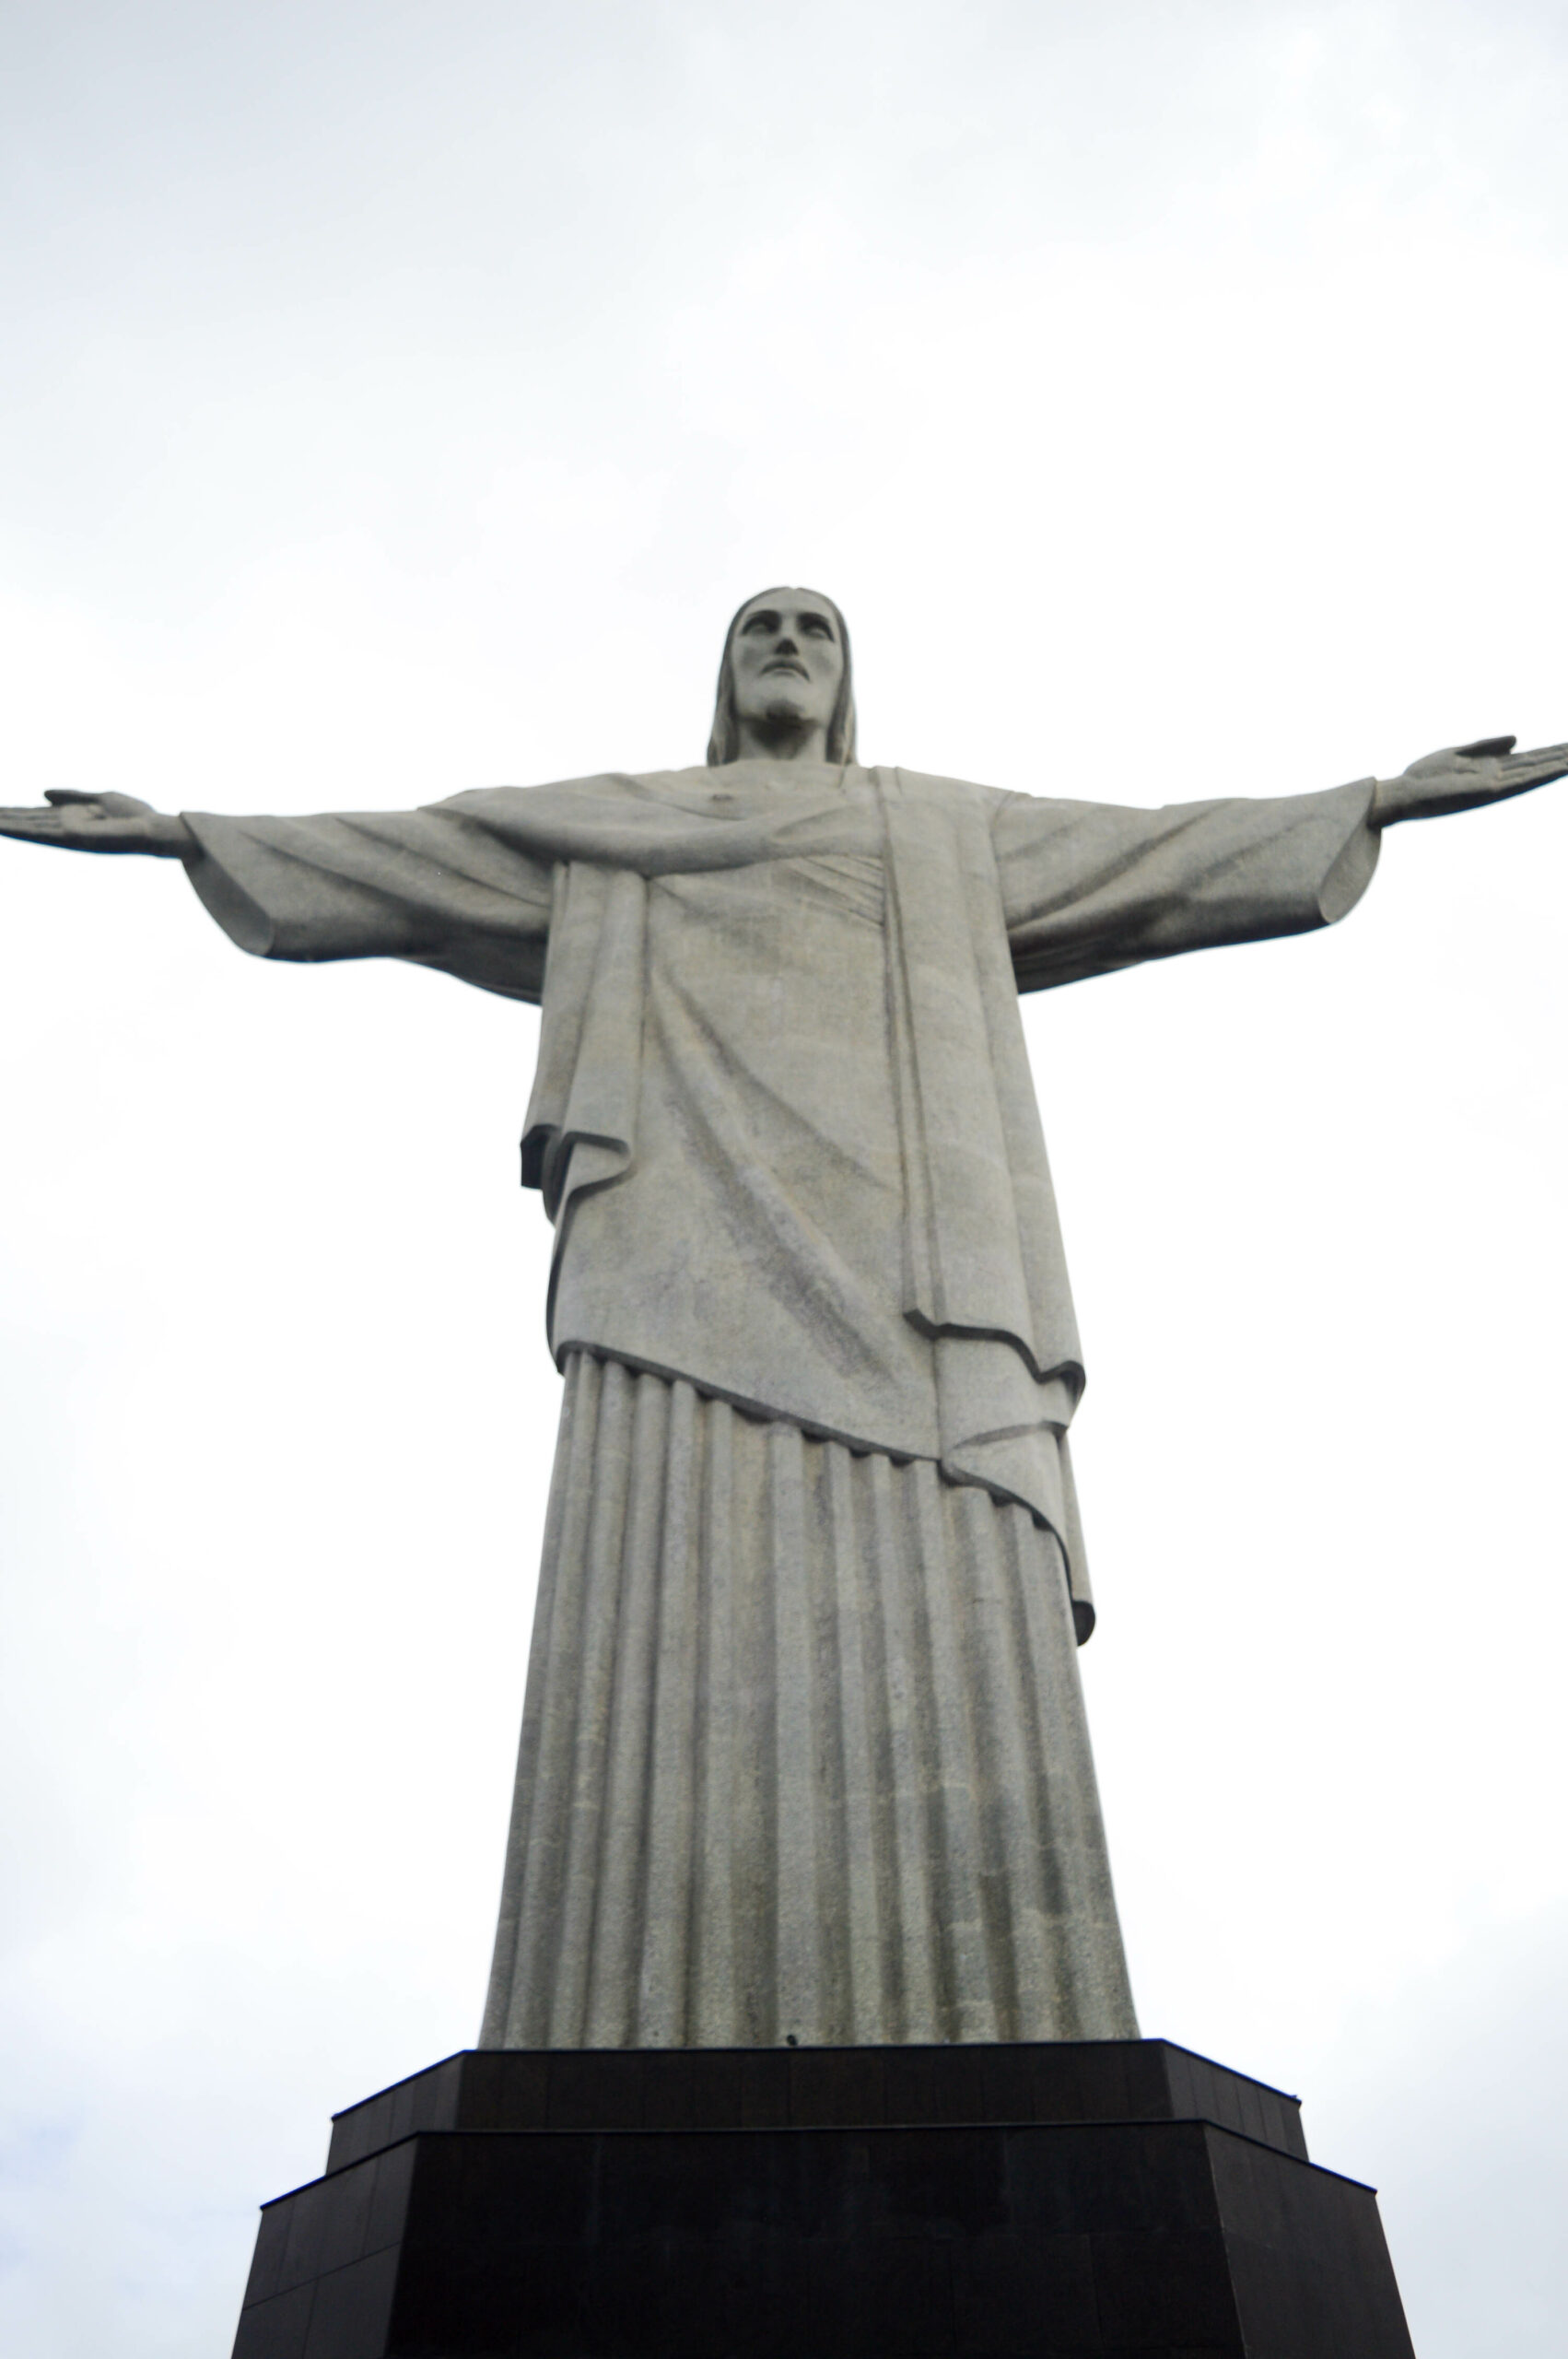 Statue du Christ rédempteur de Rio, écartant les bras